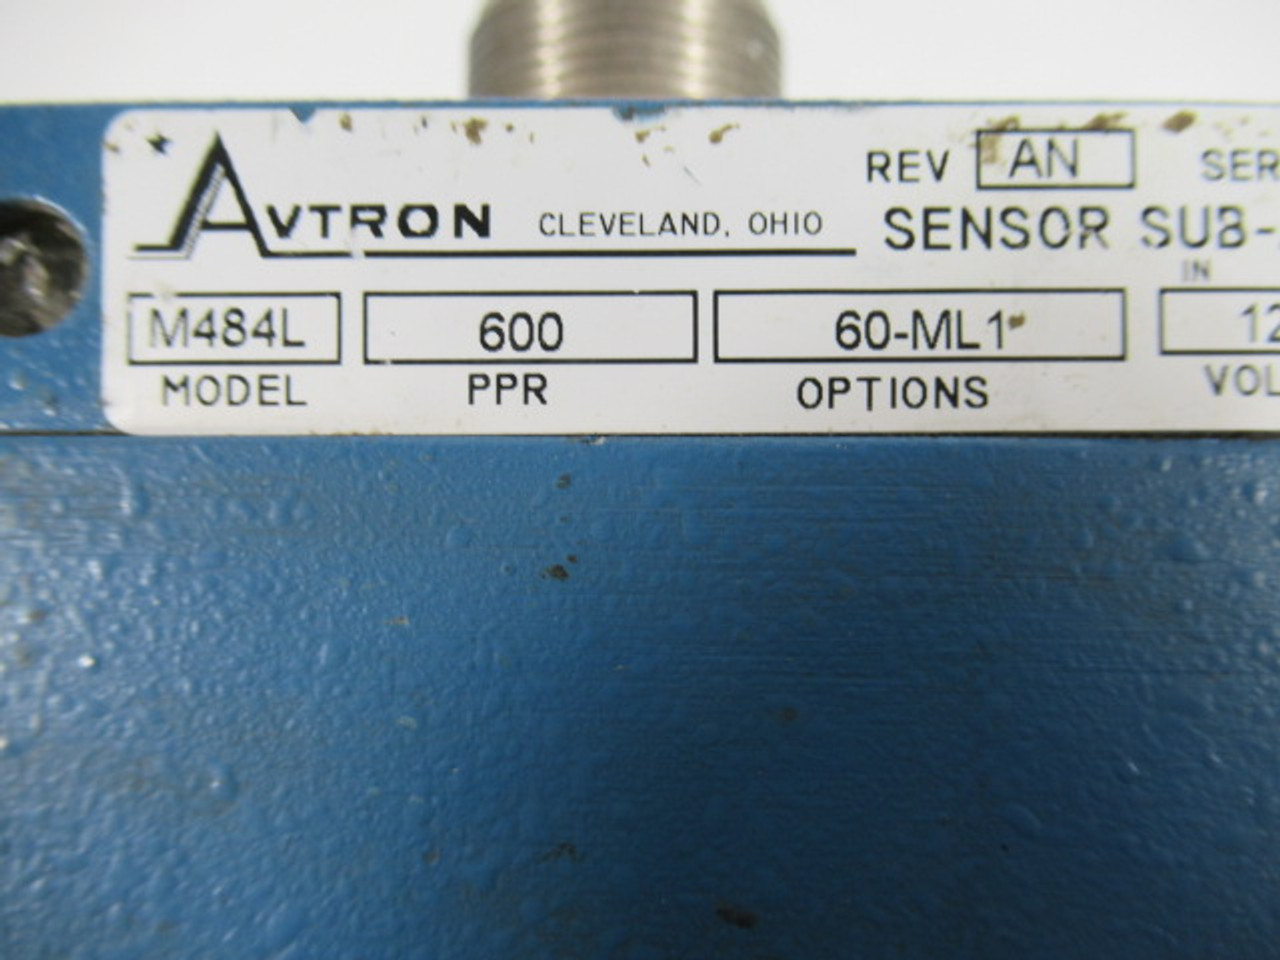 Avtron M484L Blue Sensor Sub-Assembly 12-15V PPR 600 DAMAGE TO PLUG USED